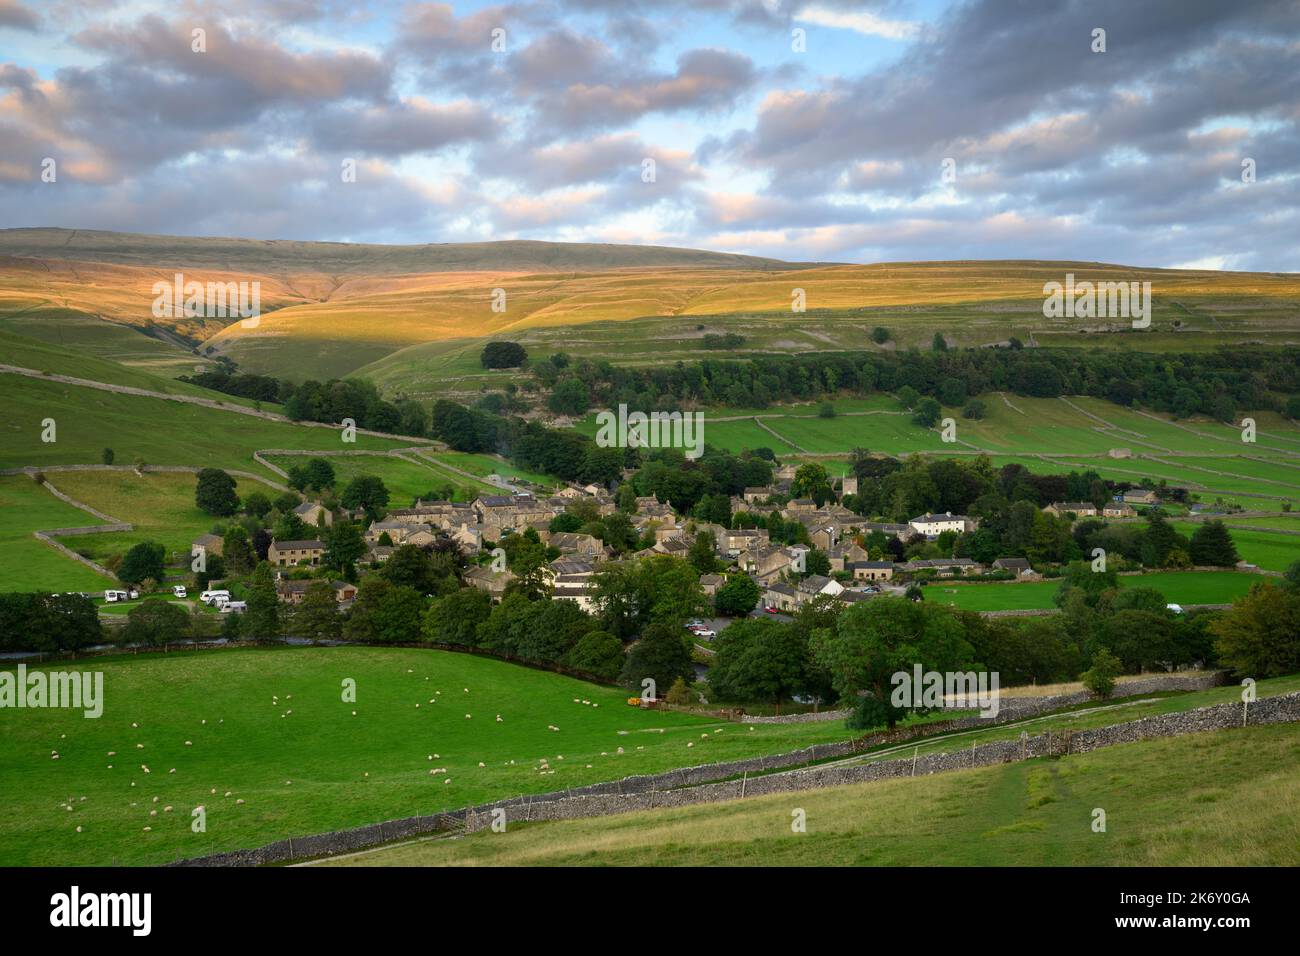 Pintoresco pueblo de Dales (casas y casas) enclavado en el valle (laderas empinadas y tierras altas de páramos iluminadas por el sol) - Kettlewell, Yorkshire Inglaterra Reino Unido. Foto de stock